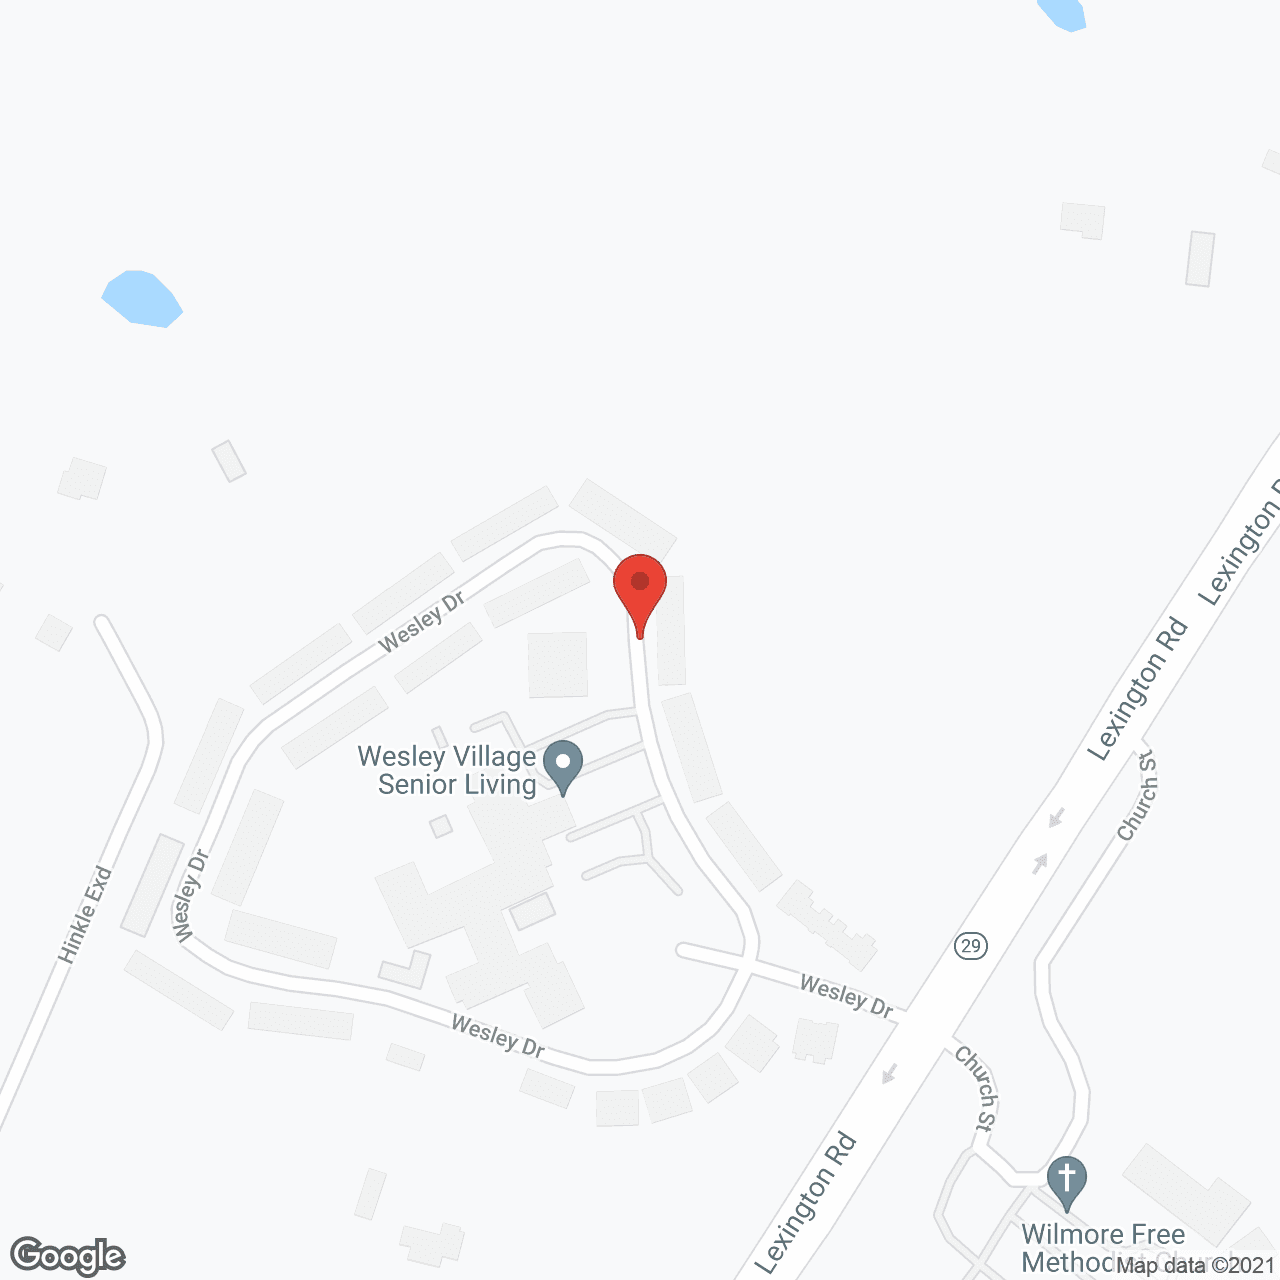 Wesley Methodist Village in google map